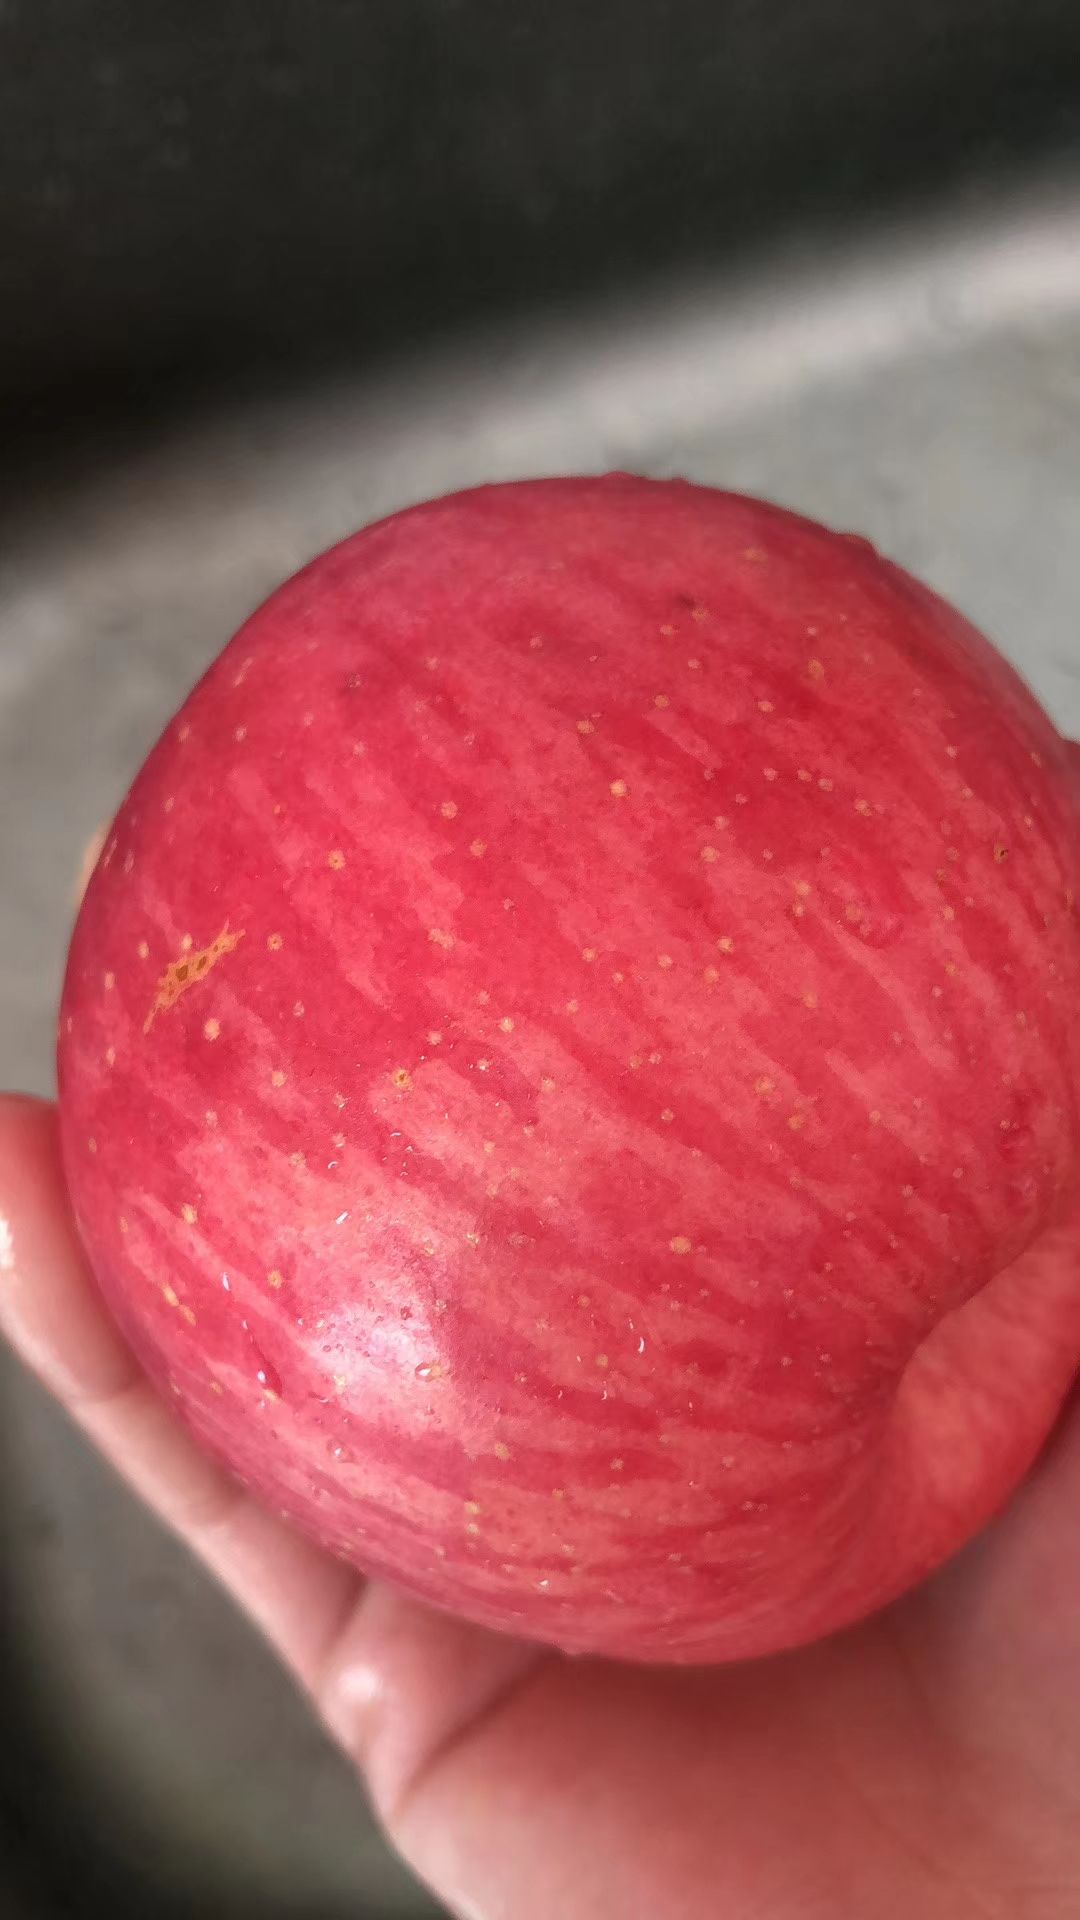  陕西自己家种的苹果红富士新鲜应现当季批一斤5.5元